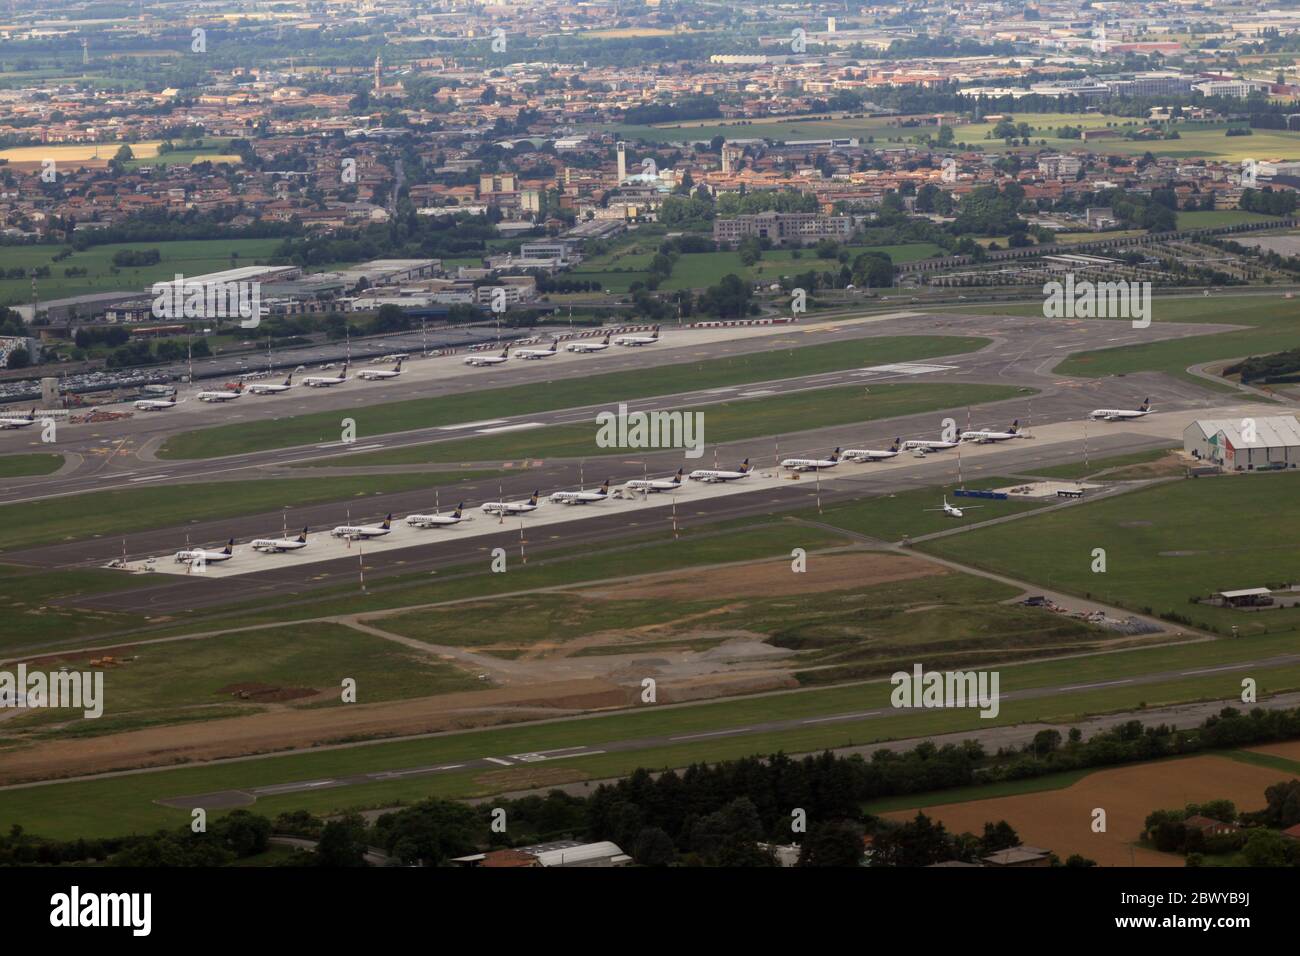 Luftaufnahme des Flughafens Bergamo, der ein Ryanair-Drehkreuz ist. Dutzende von geerdeten Flugzeugen stehen im internationalen Flughafen Bergamo (LIME/BGY) an, weil sie Maßnahmen für das Coronavirus 2019 sperren. Der Flughafen selbst ist geschlossen und der Flugverkehr wird reduziert. Die Flugzeuge werden regelmäßig geflogen, um sie flugfähig zu halten. Stockfoto